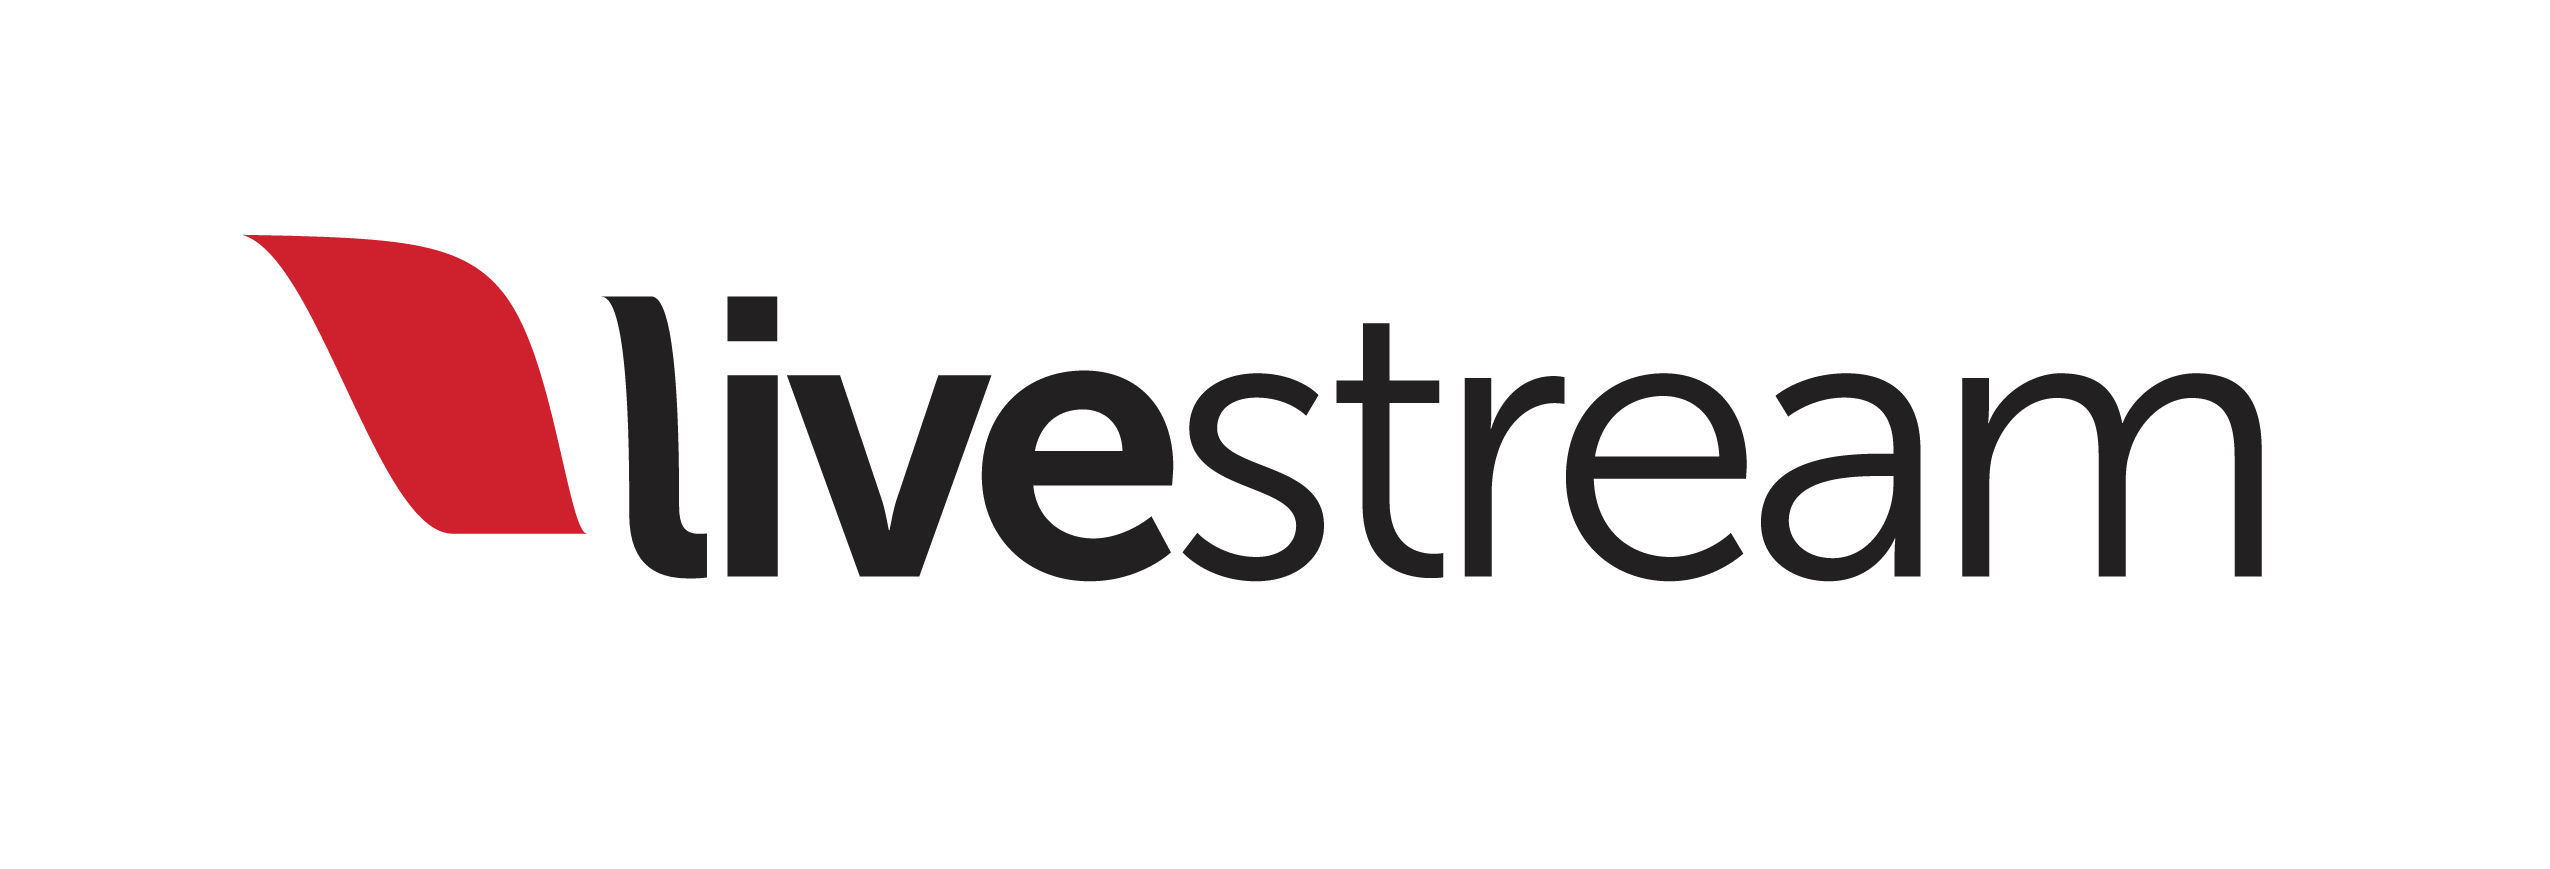 Google Stream Logo - Livestream Logo transparent PNG